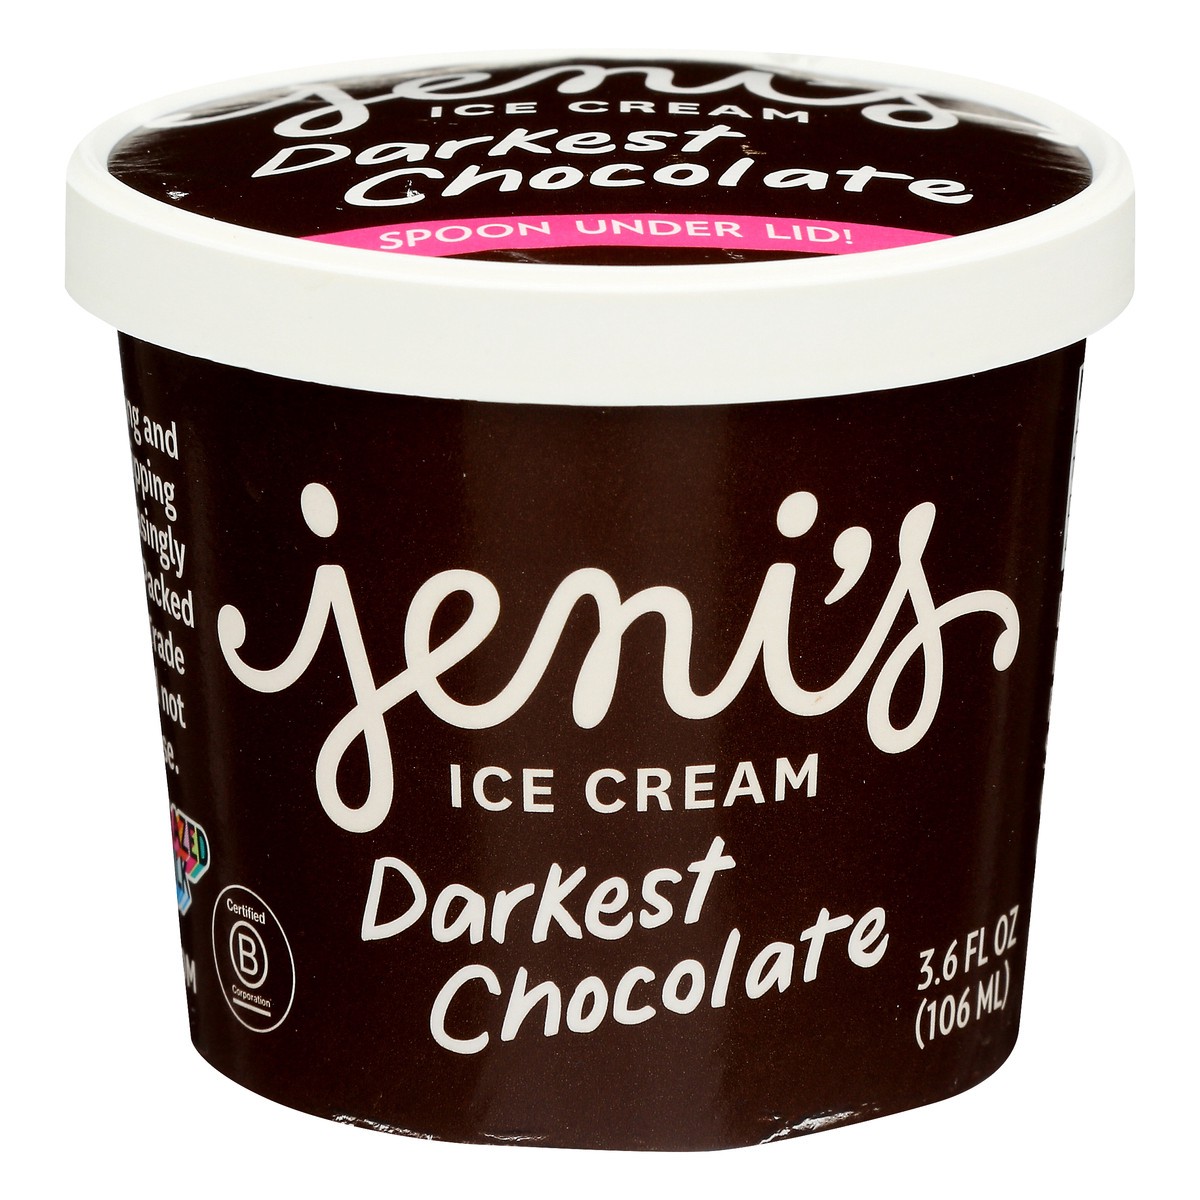 slide 1 of 8, Jeni's Darkest Chocolate Ice Cream 3.6 oz, 3.6 oz